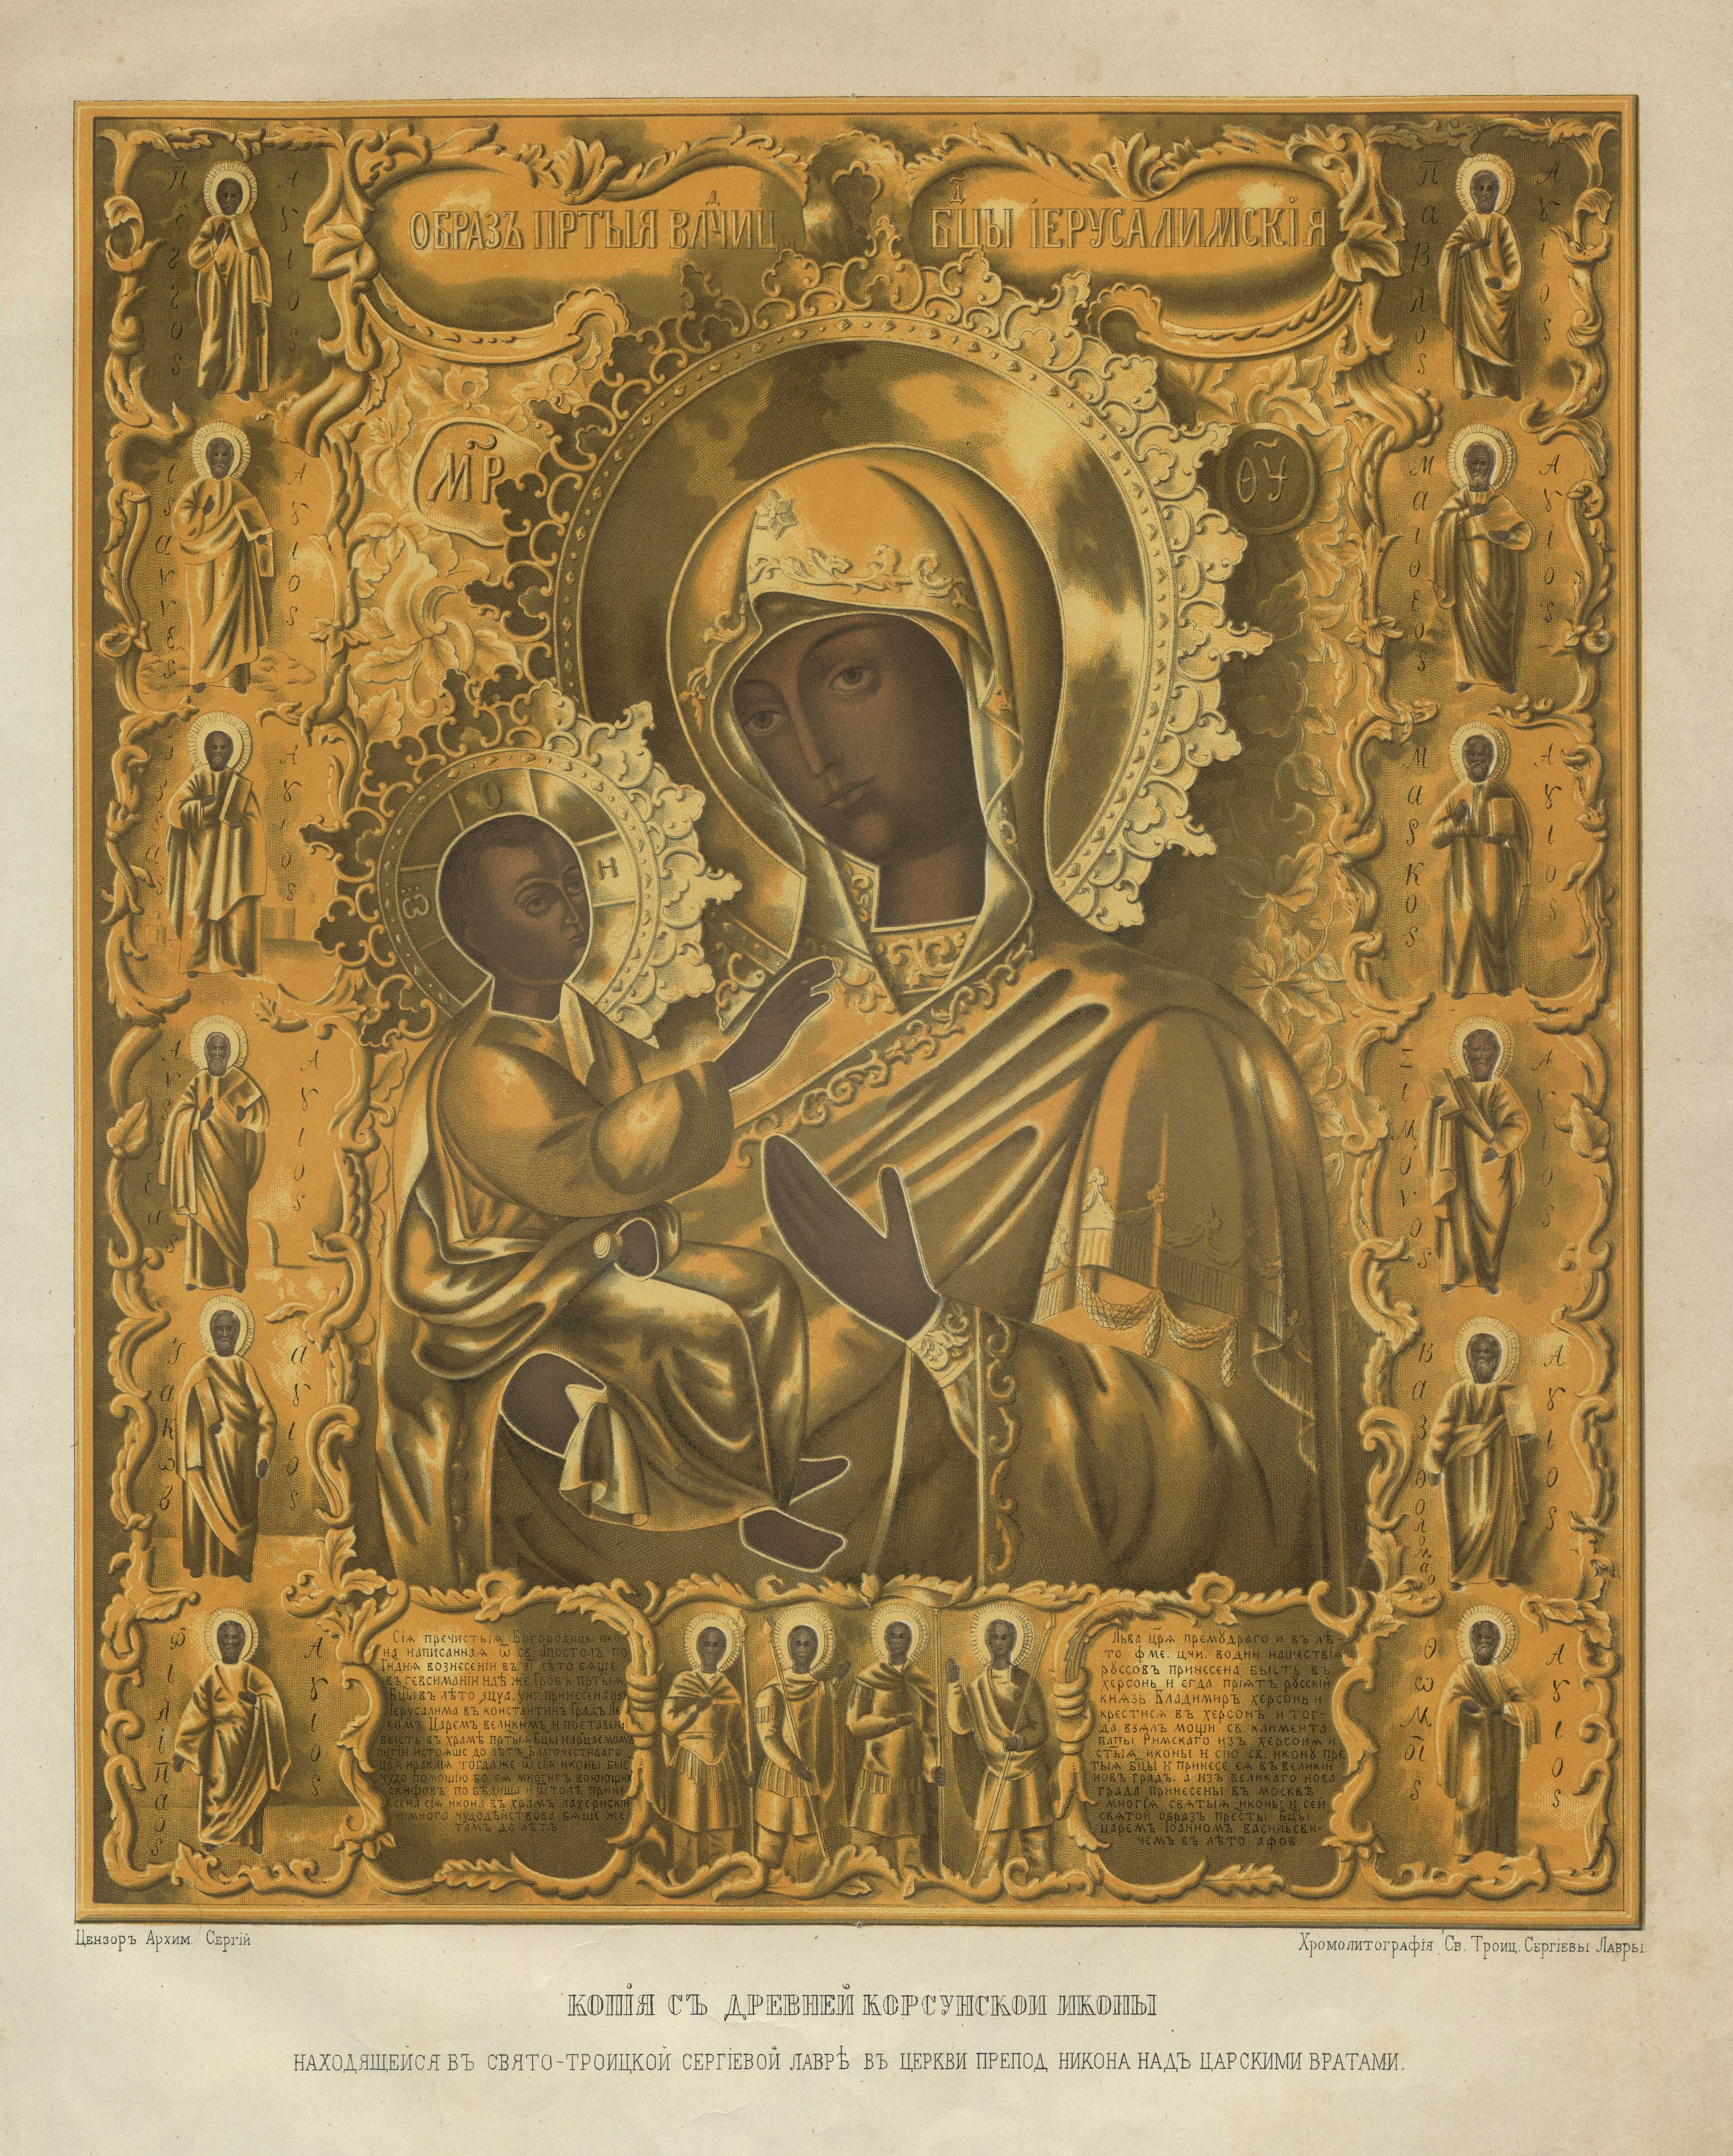 Копия с древней Корсунской иконы, находящейся в Свято-Троицкой Сергиевой Лавре в церкви препод. Никона над Царскими вратами